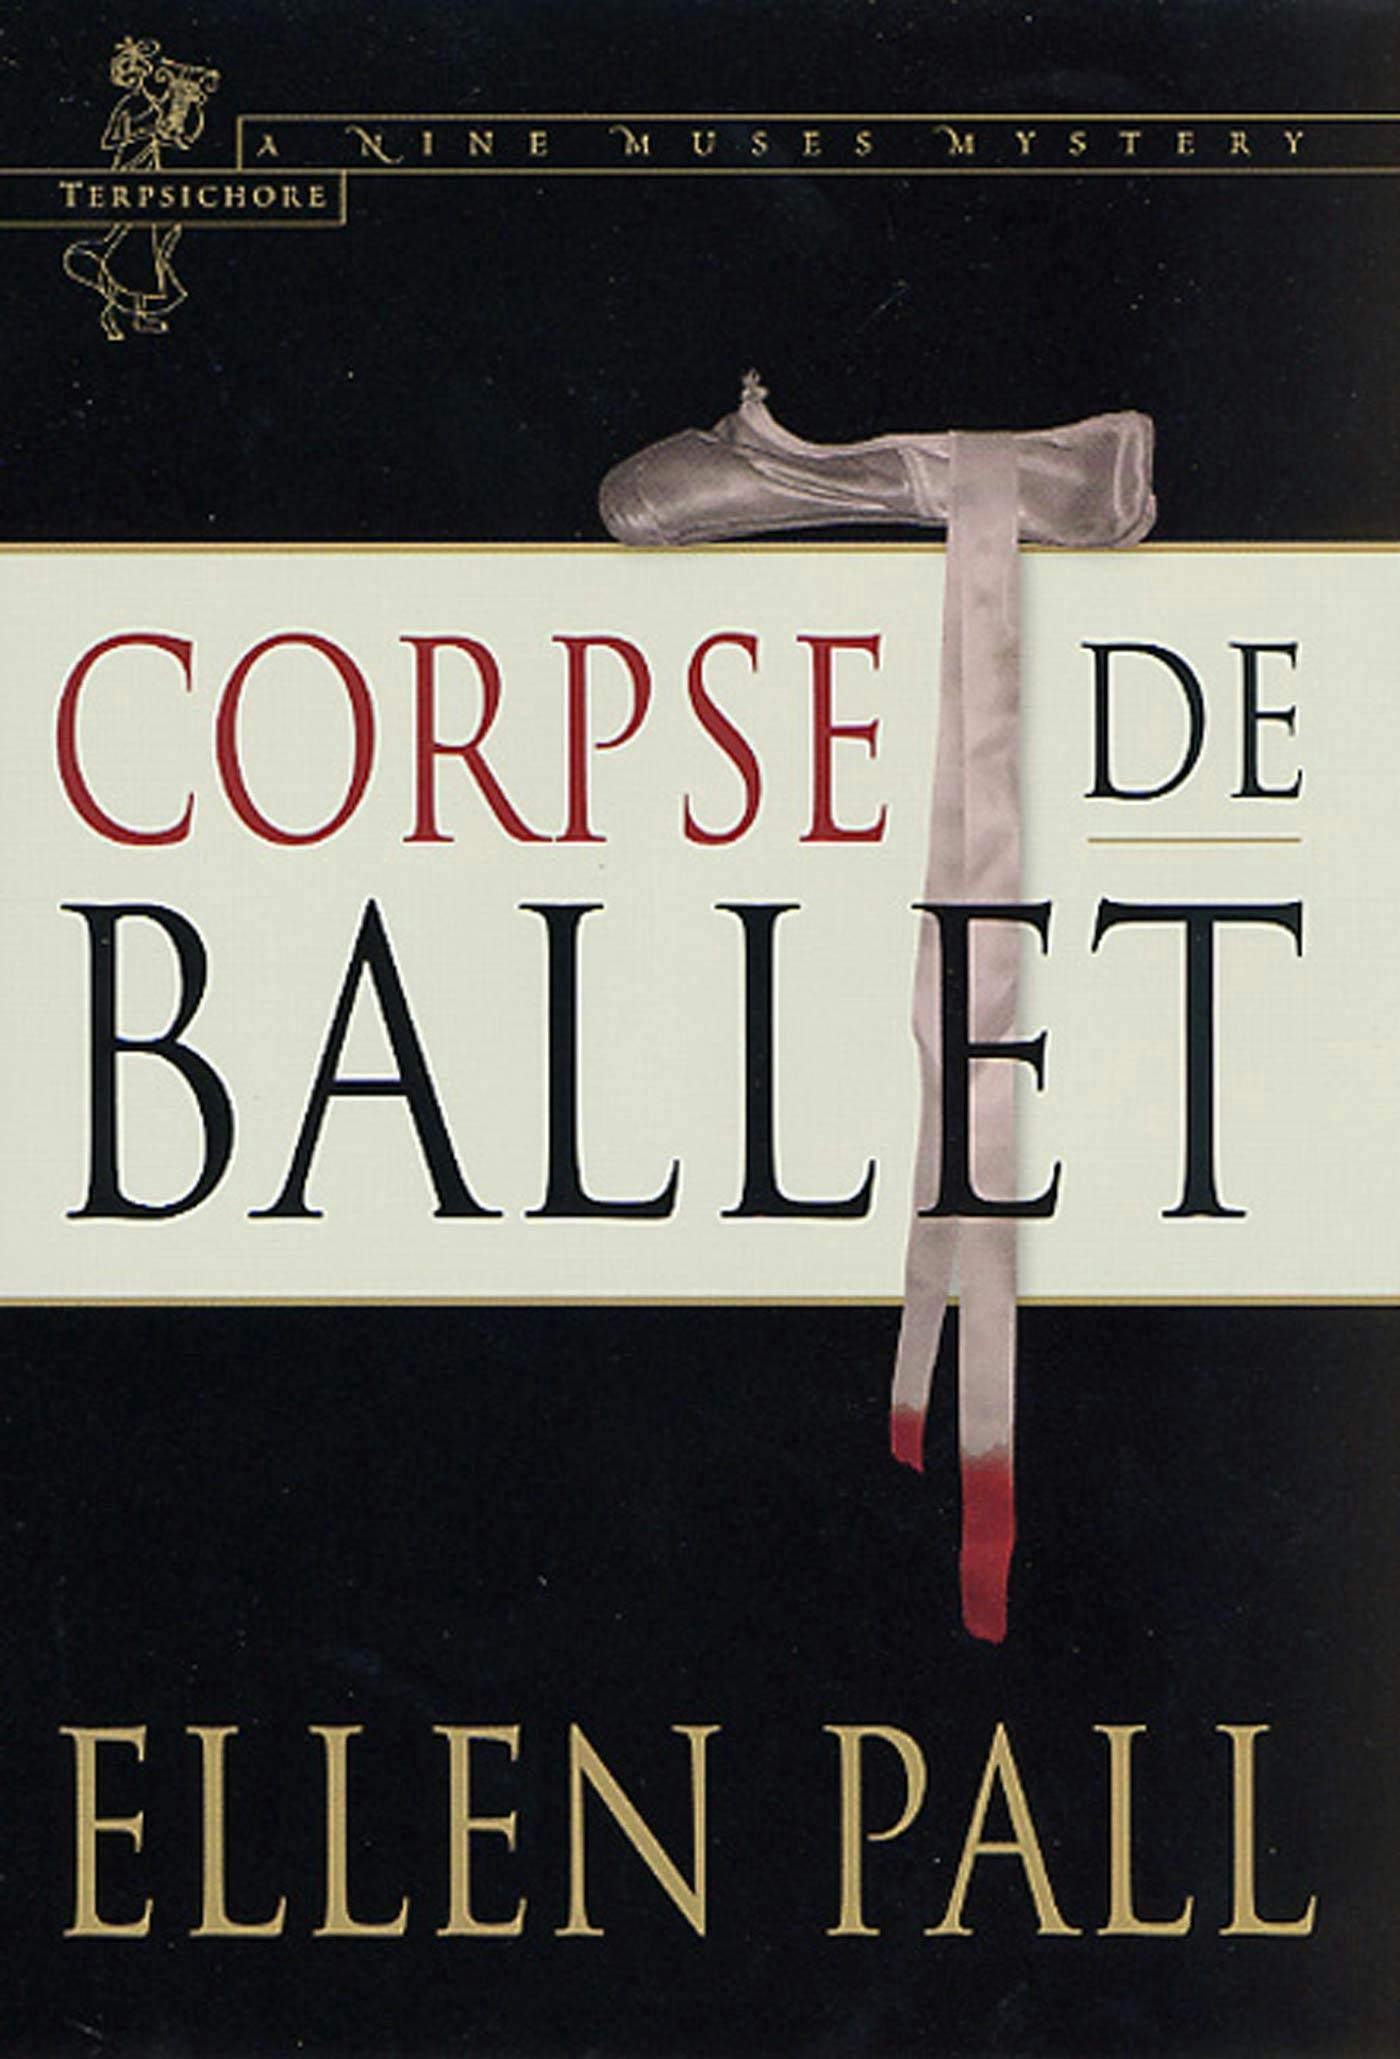 Corpse de Ballet